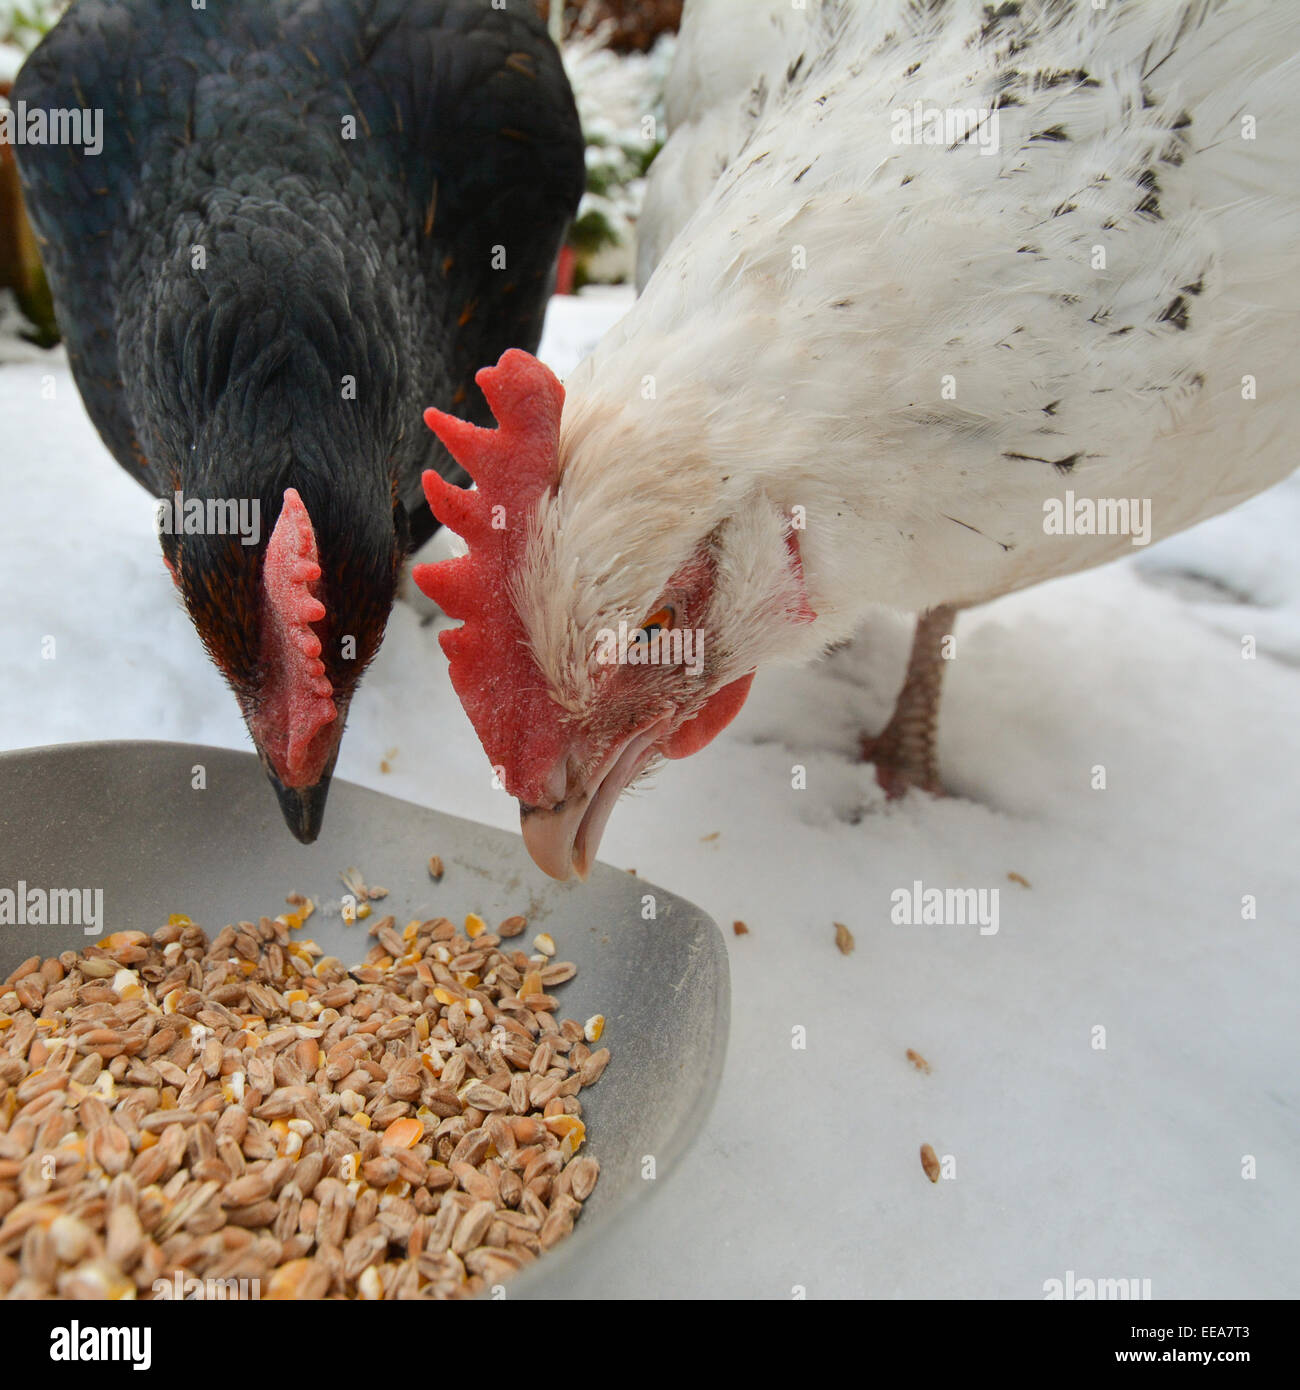 Deux poulets domestiques des céréales de l'alimentation dans la neige - libre Banque D'Images